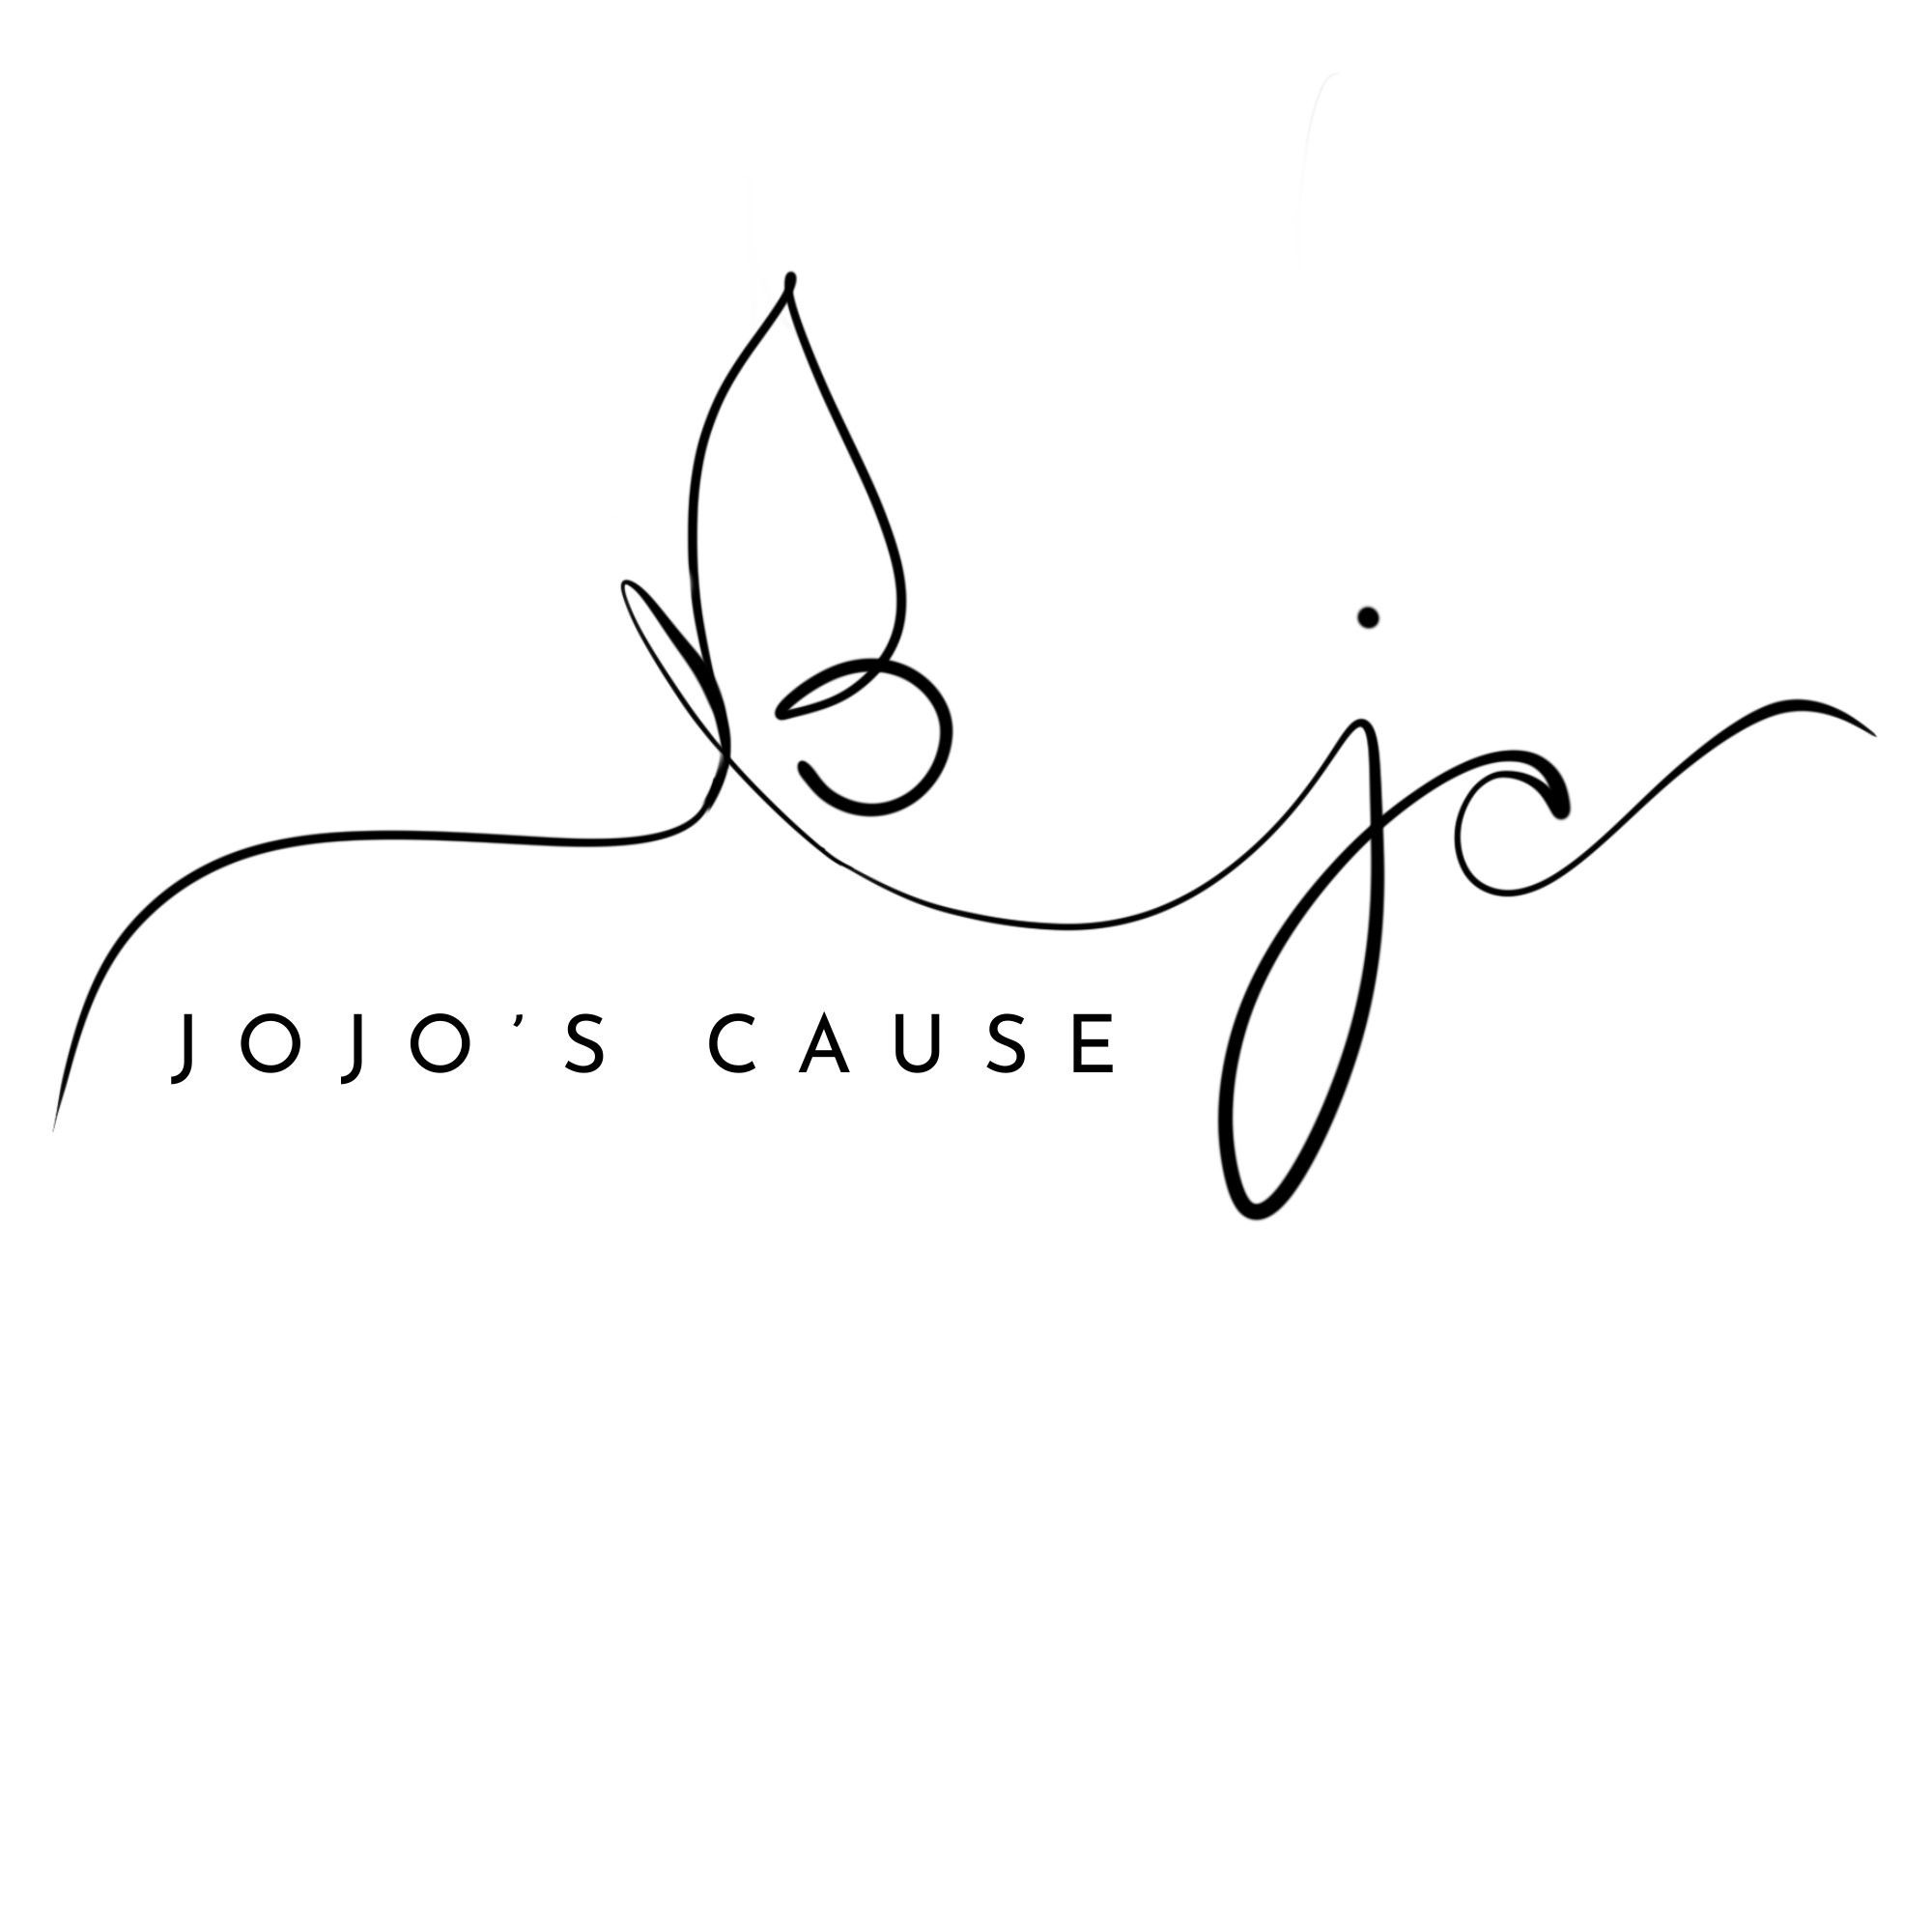 JoJo's Cause logo